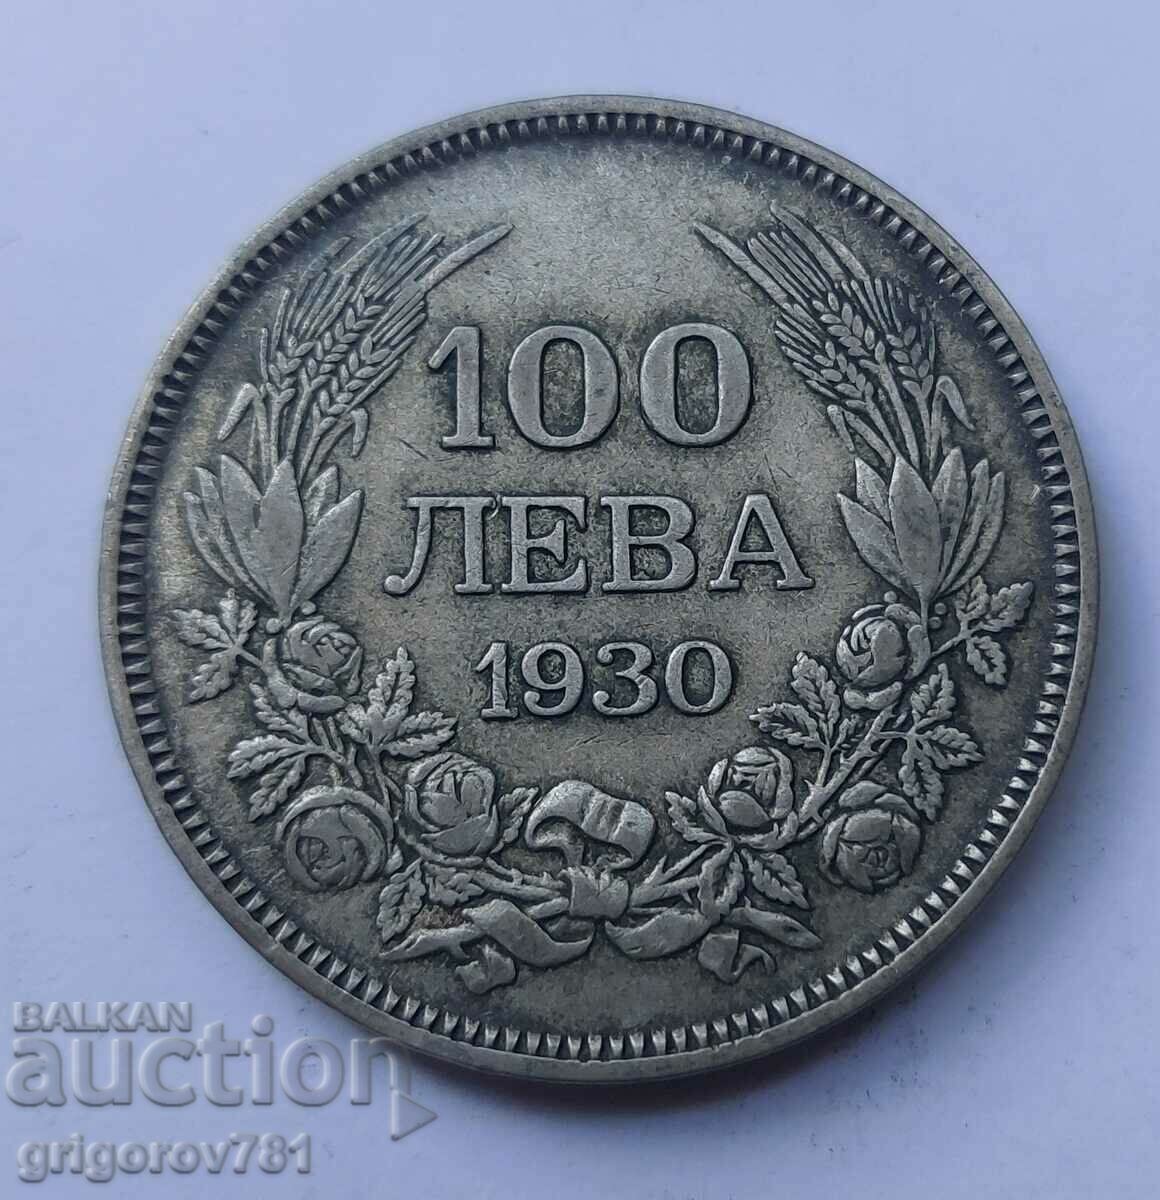 100 leva silver Bulgaria 1930 - silver coin #34